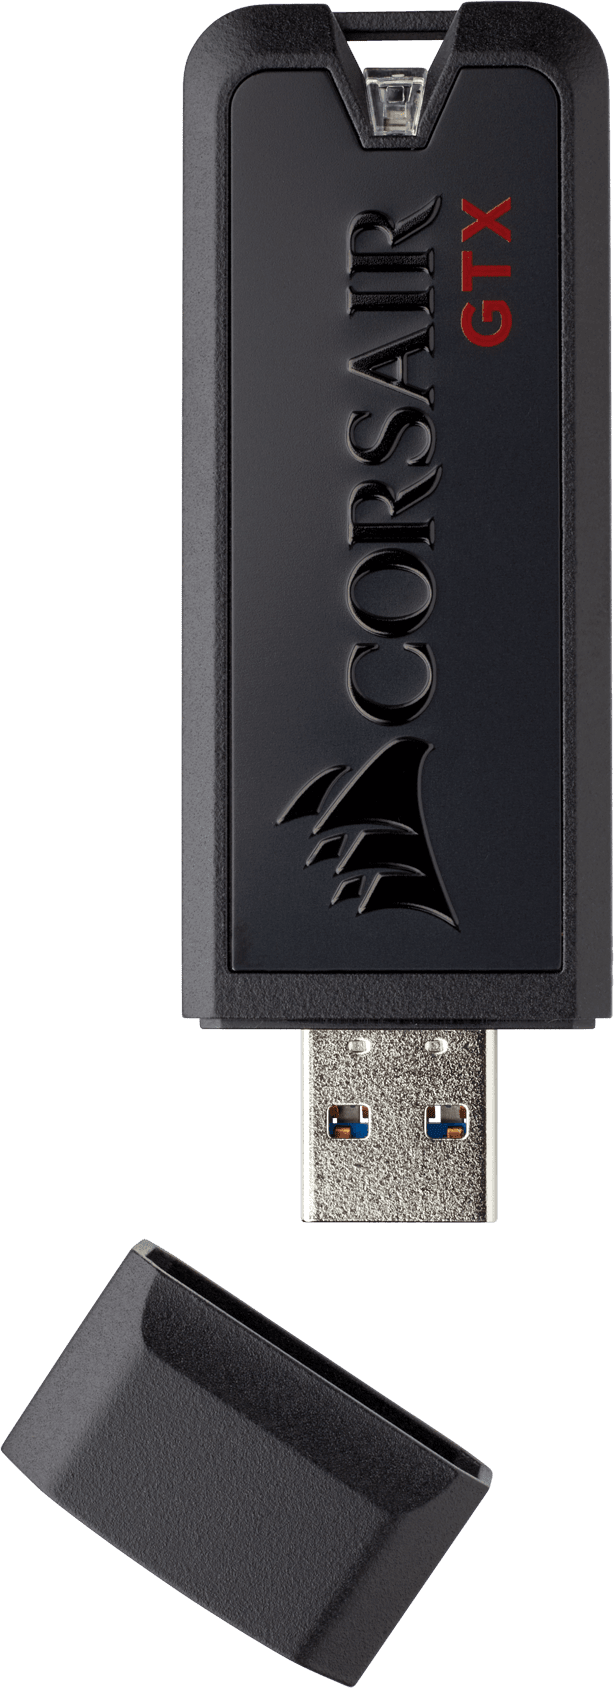 Flash Voyager® GTX USB 3.1 256GB Premium